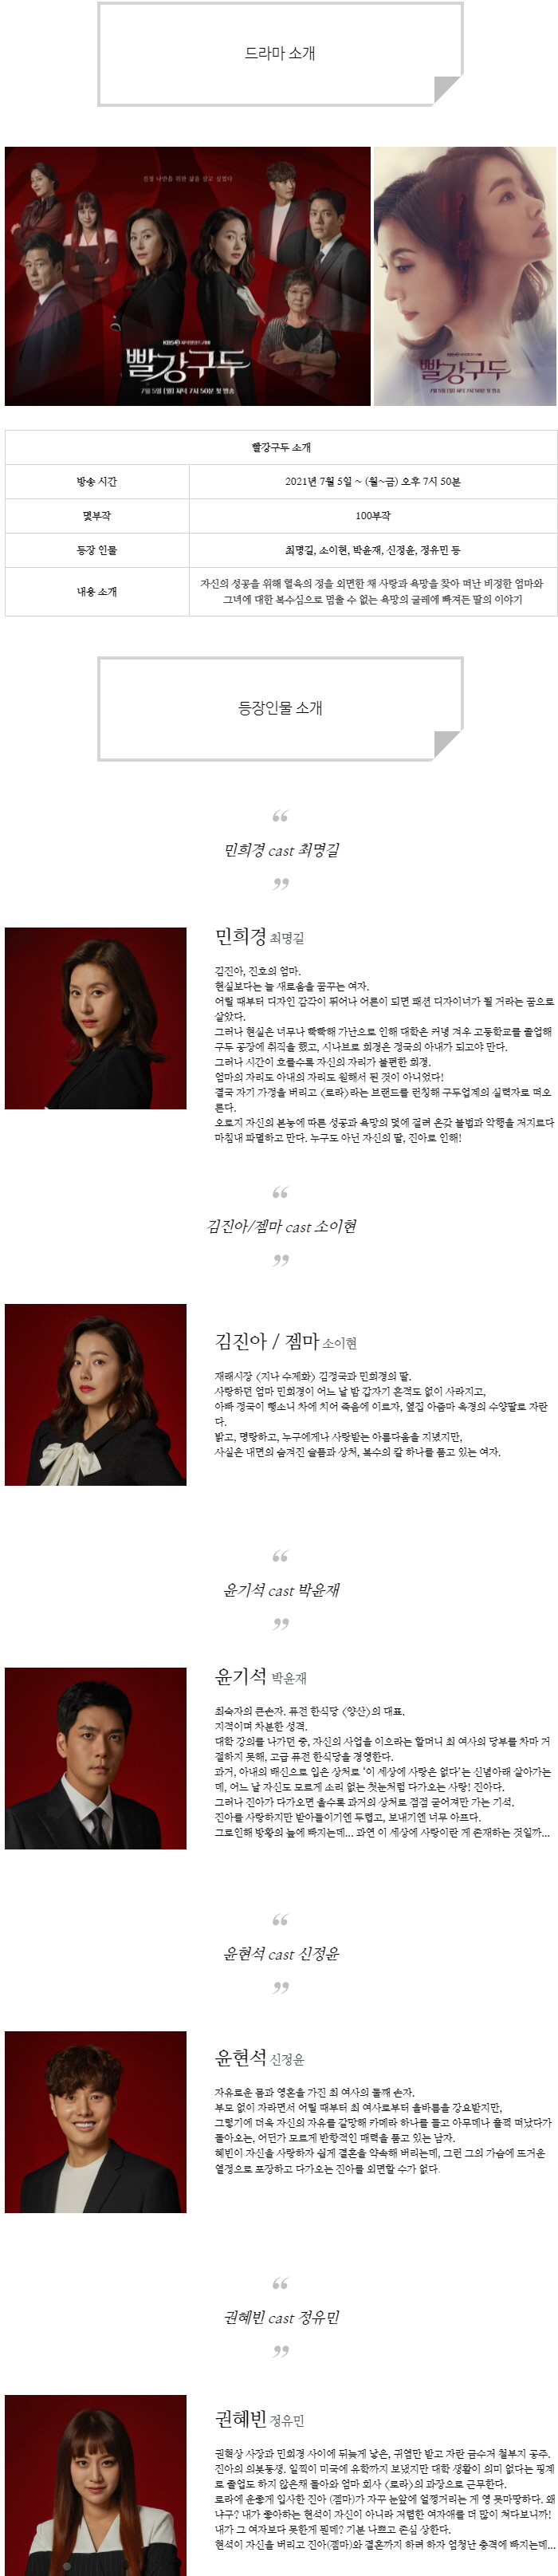 [일일드라마] 빨강 구두 인물관계도, 몇부작, 정보 소개